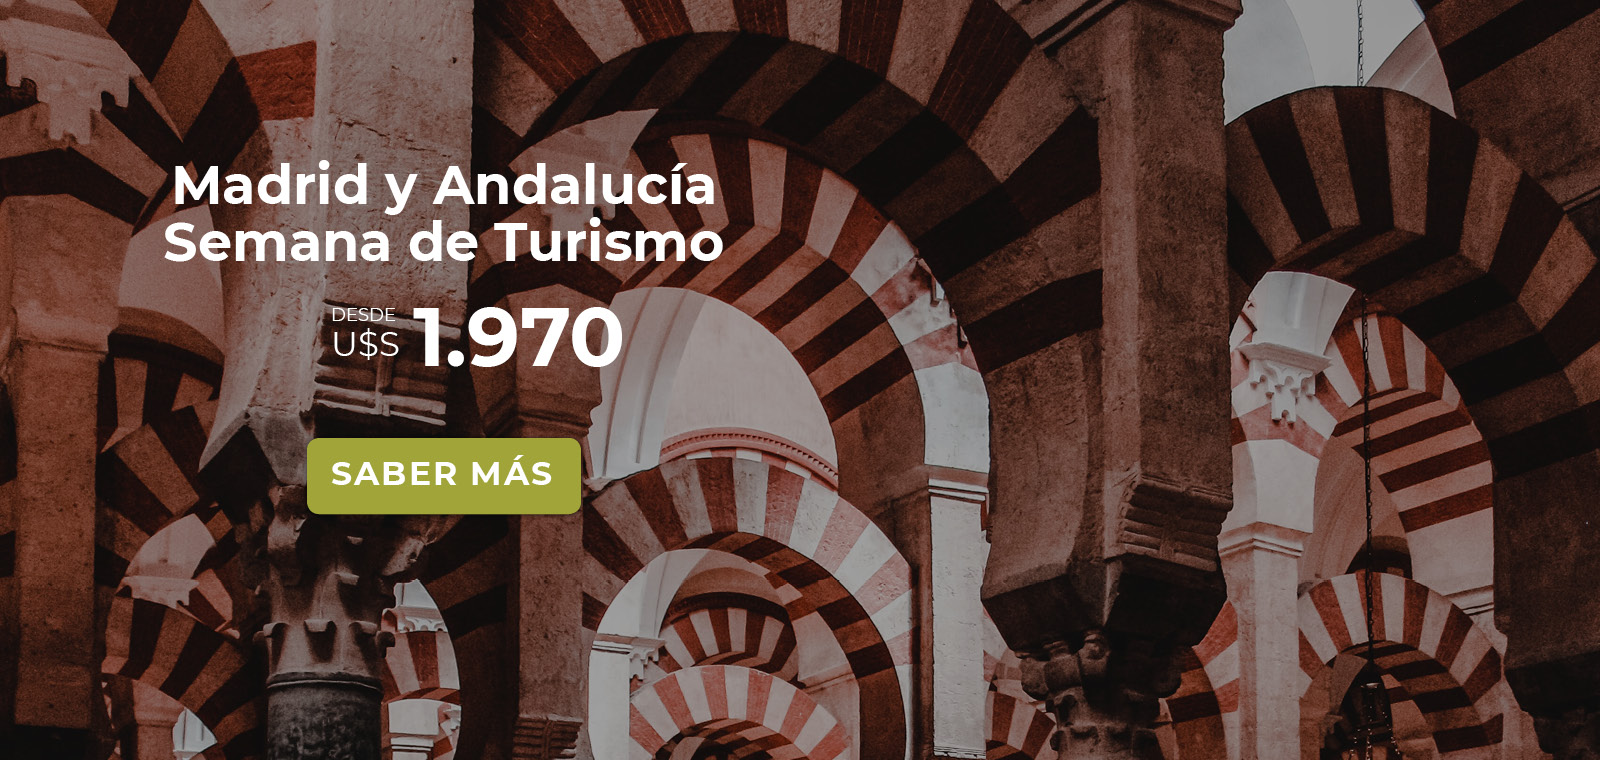 Madrid y Andalucia Turismo